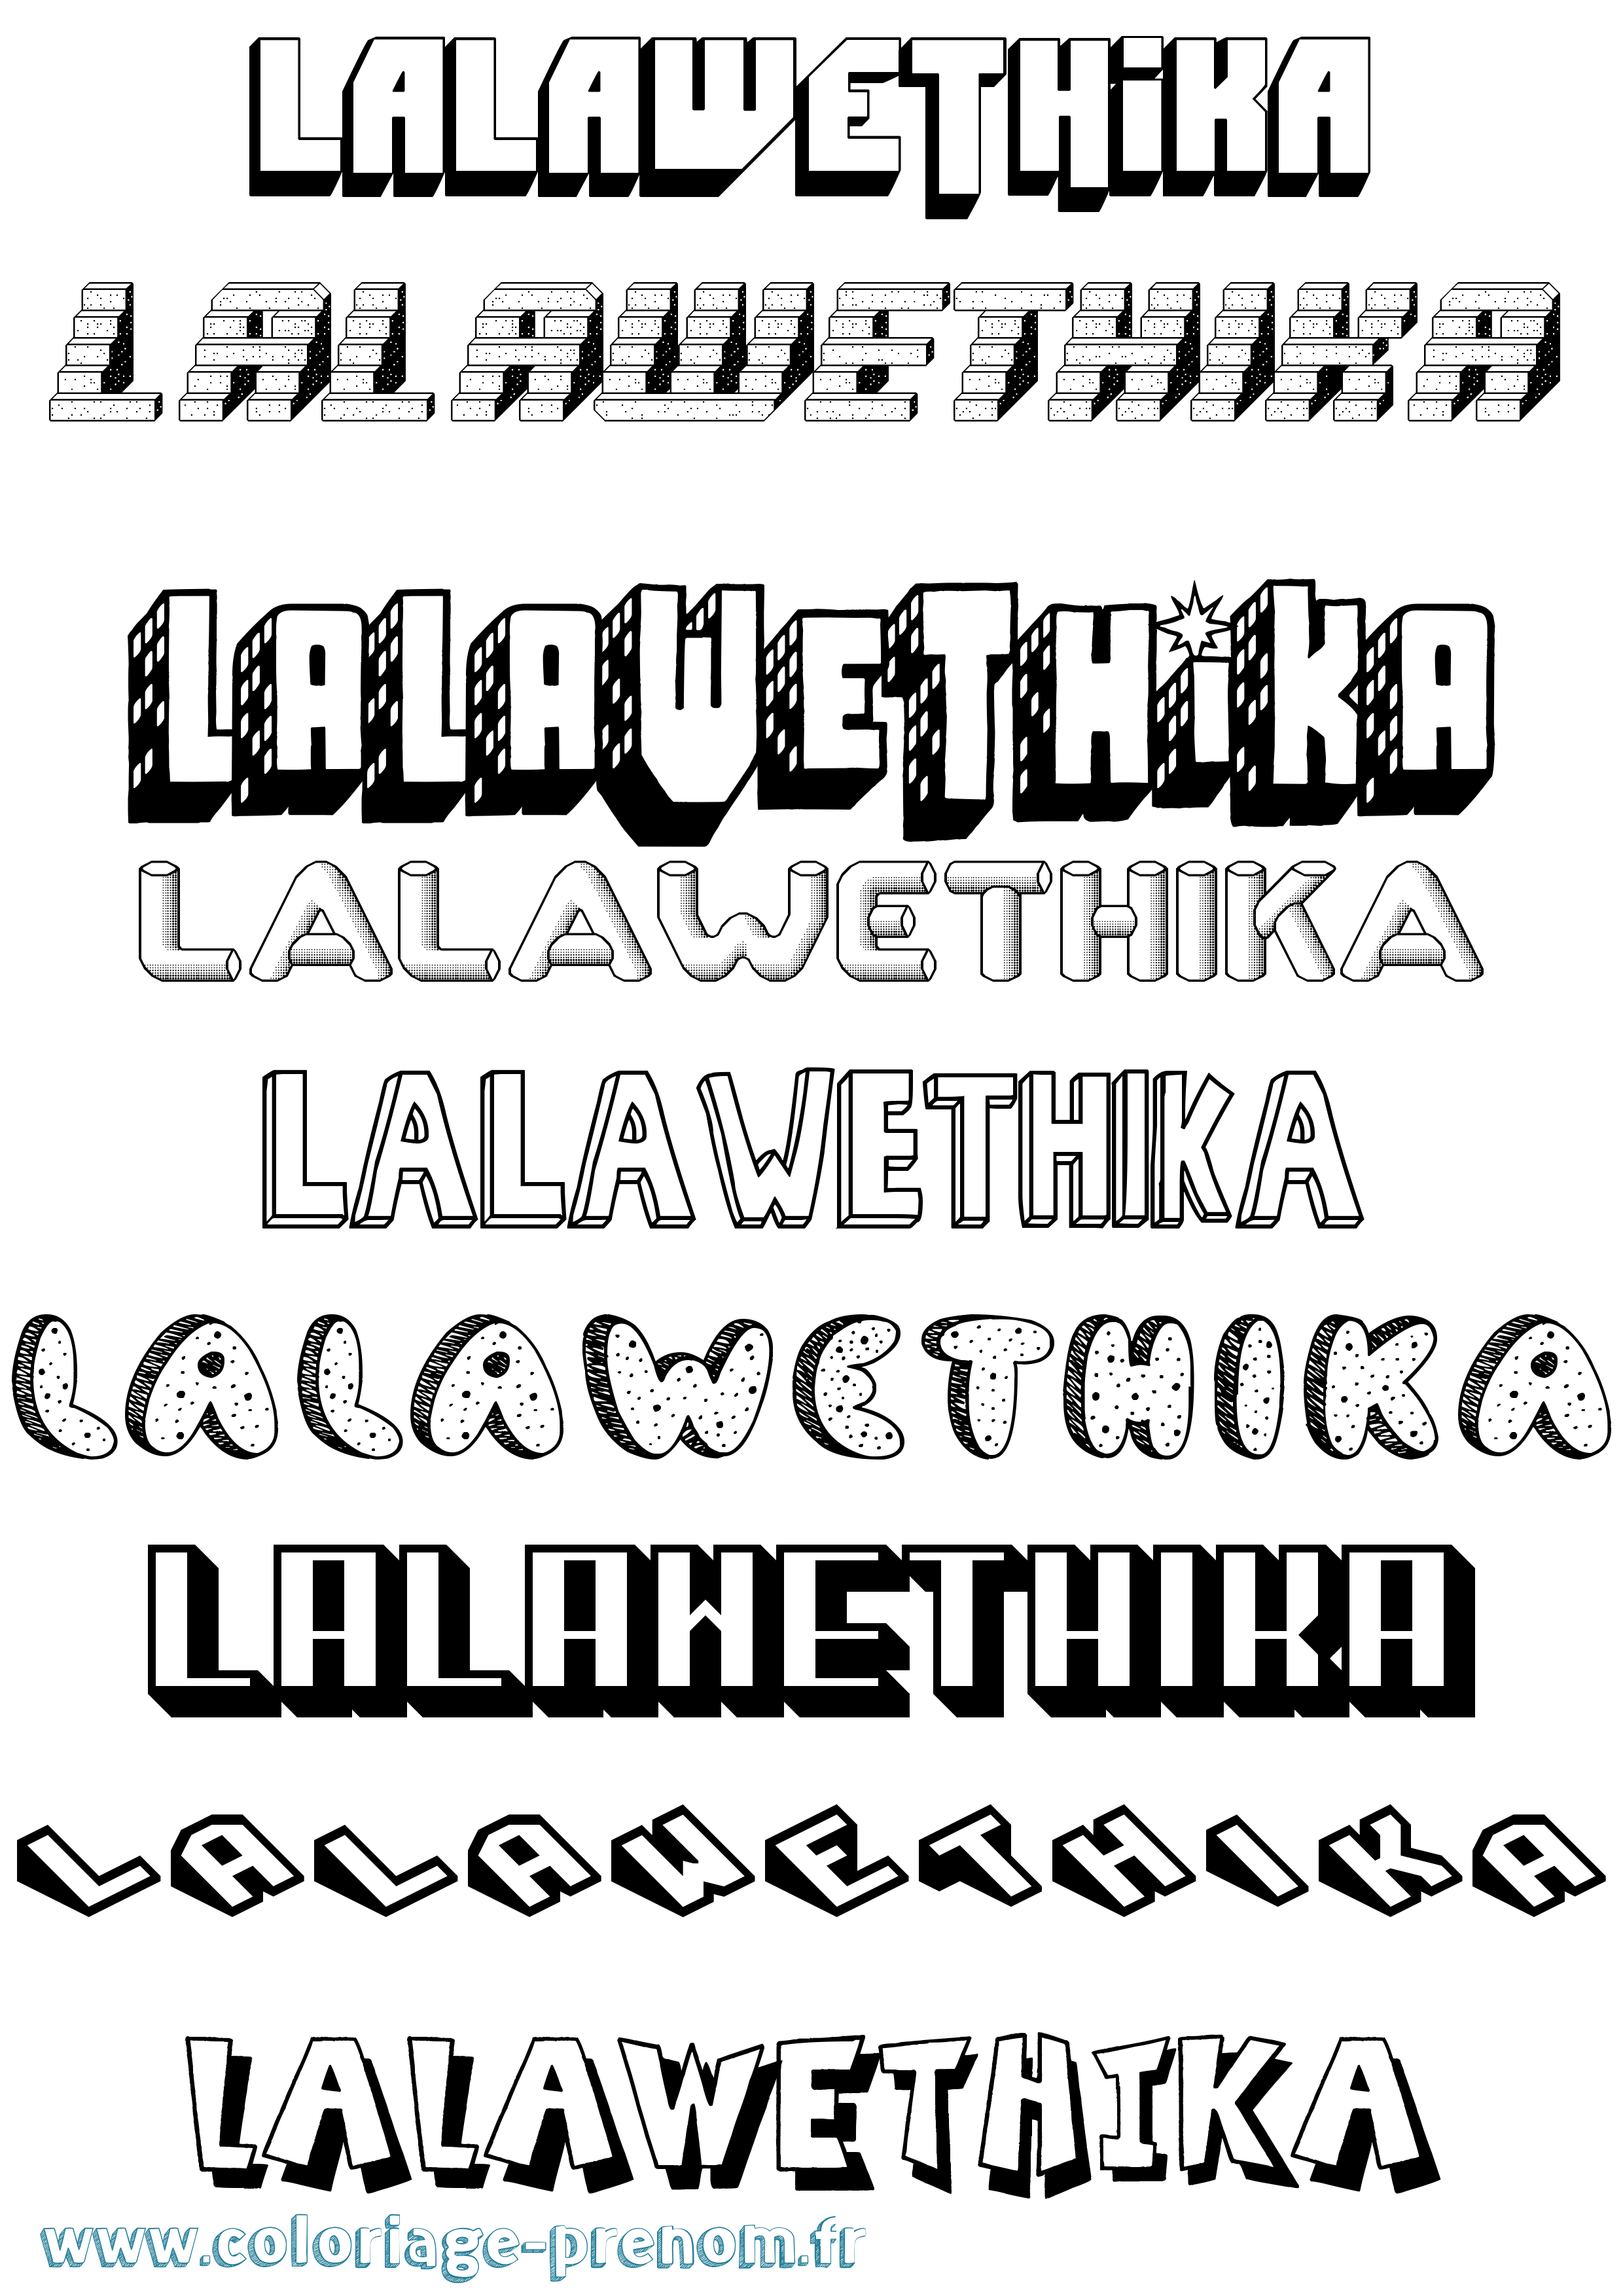 Coloriage prénom Lalawethika Effet 3D